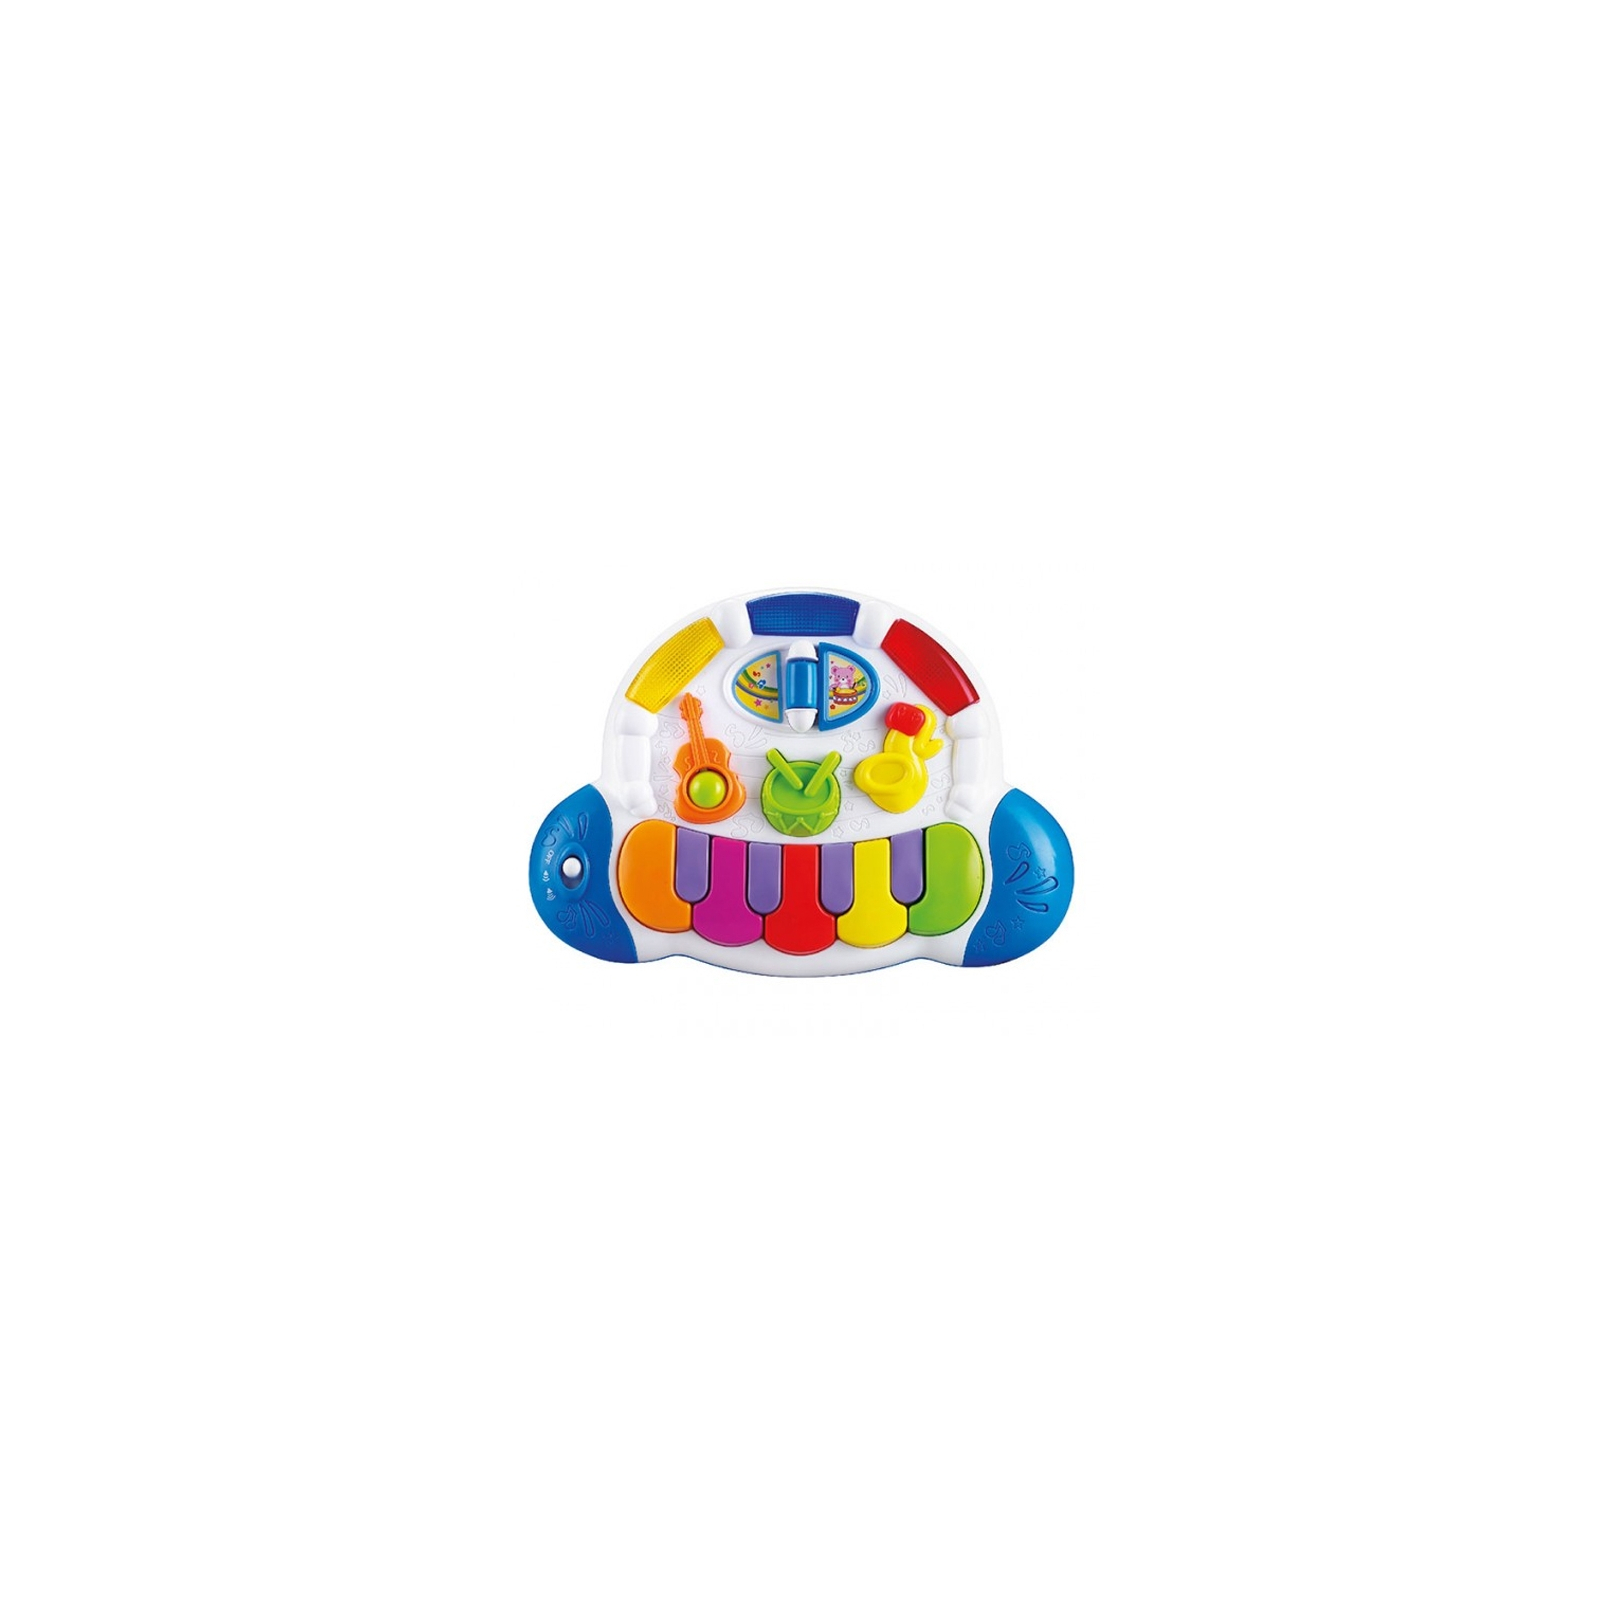 Развивающая игрушка Baby Team Пианино (8635)